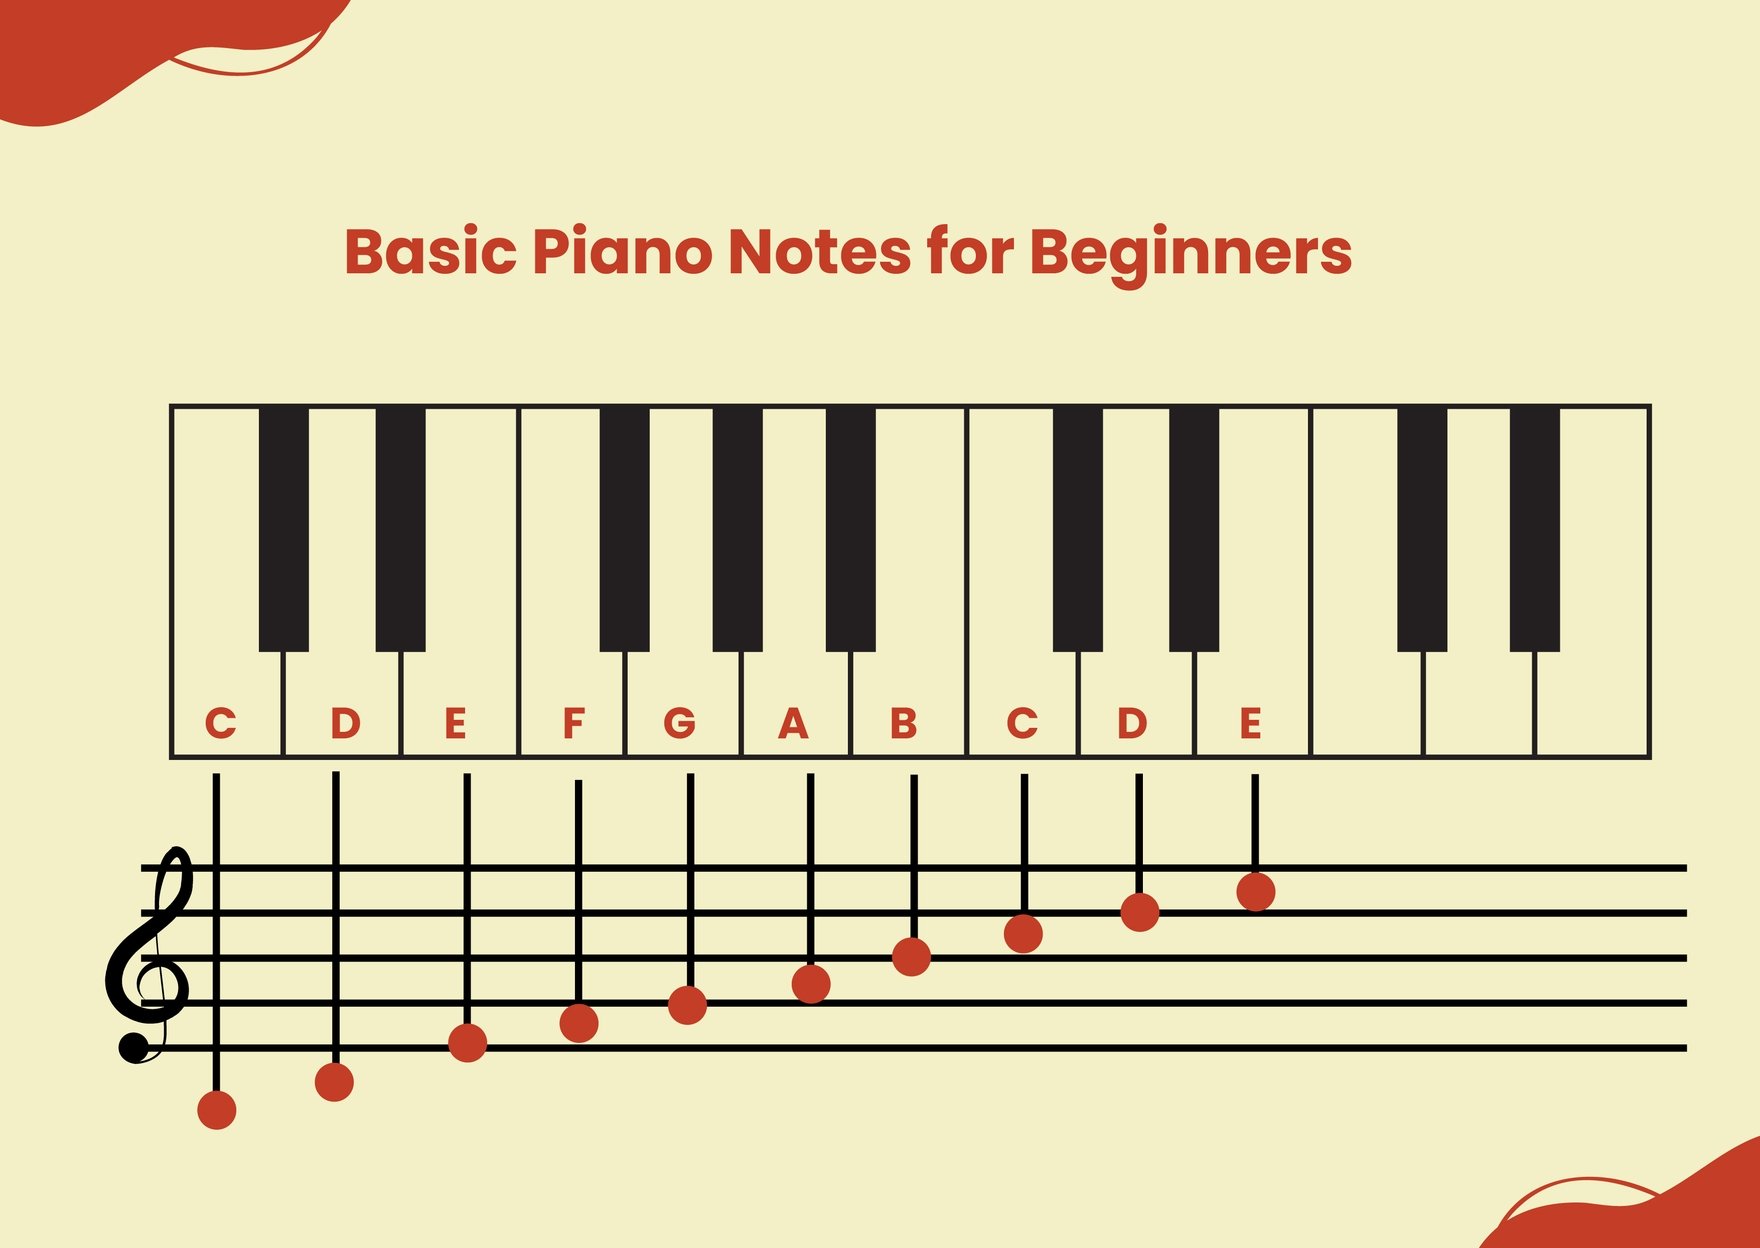 Marimba Notes Chart